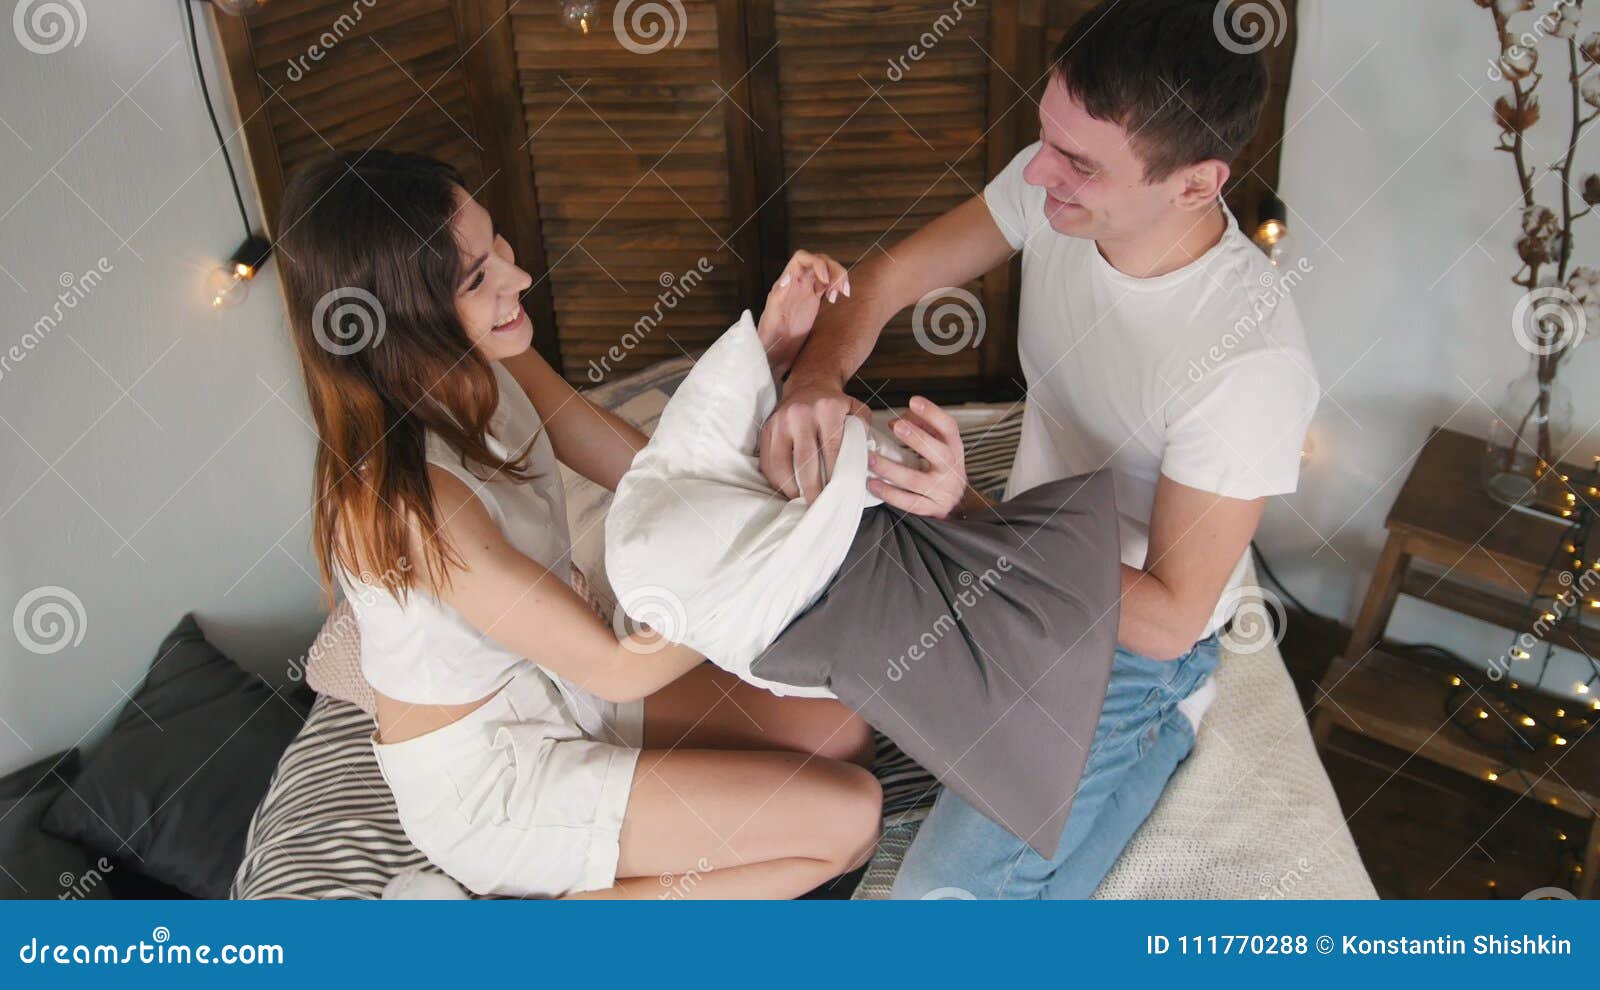 Girl Tickles Guy